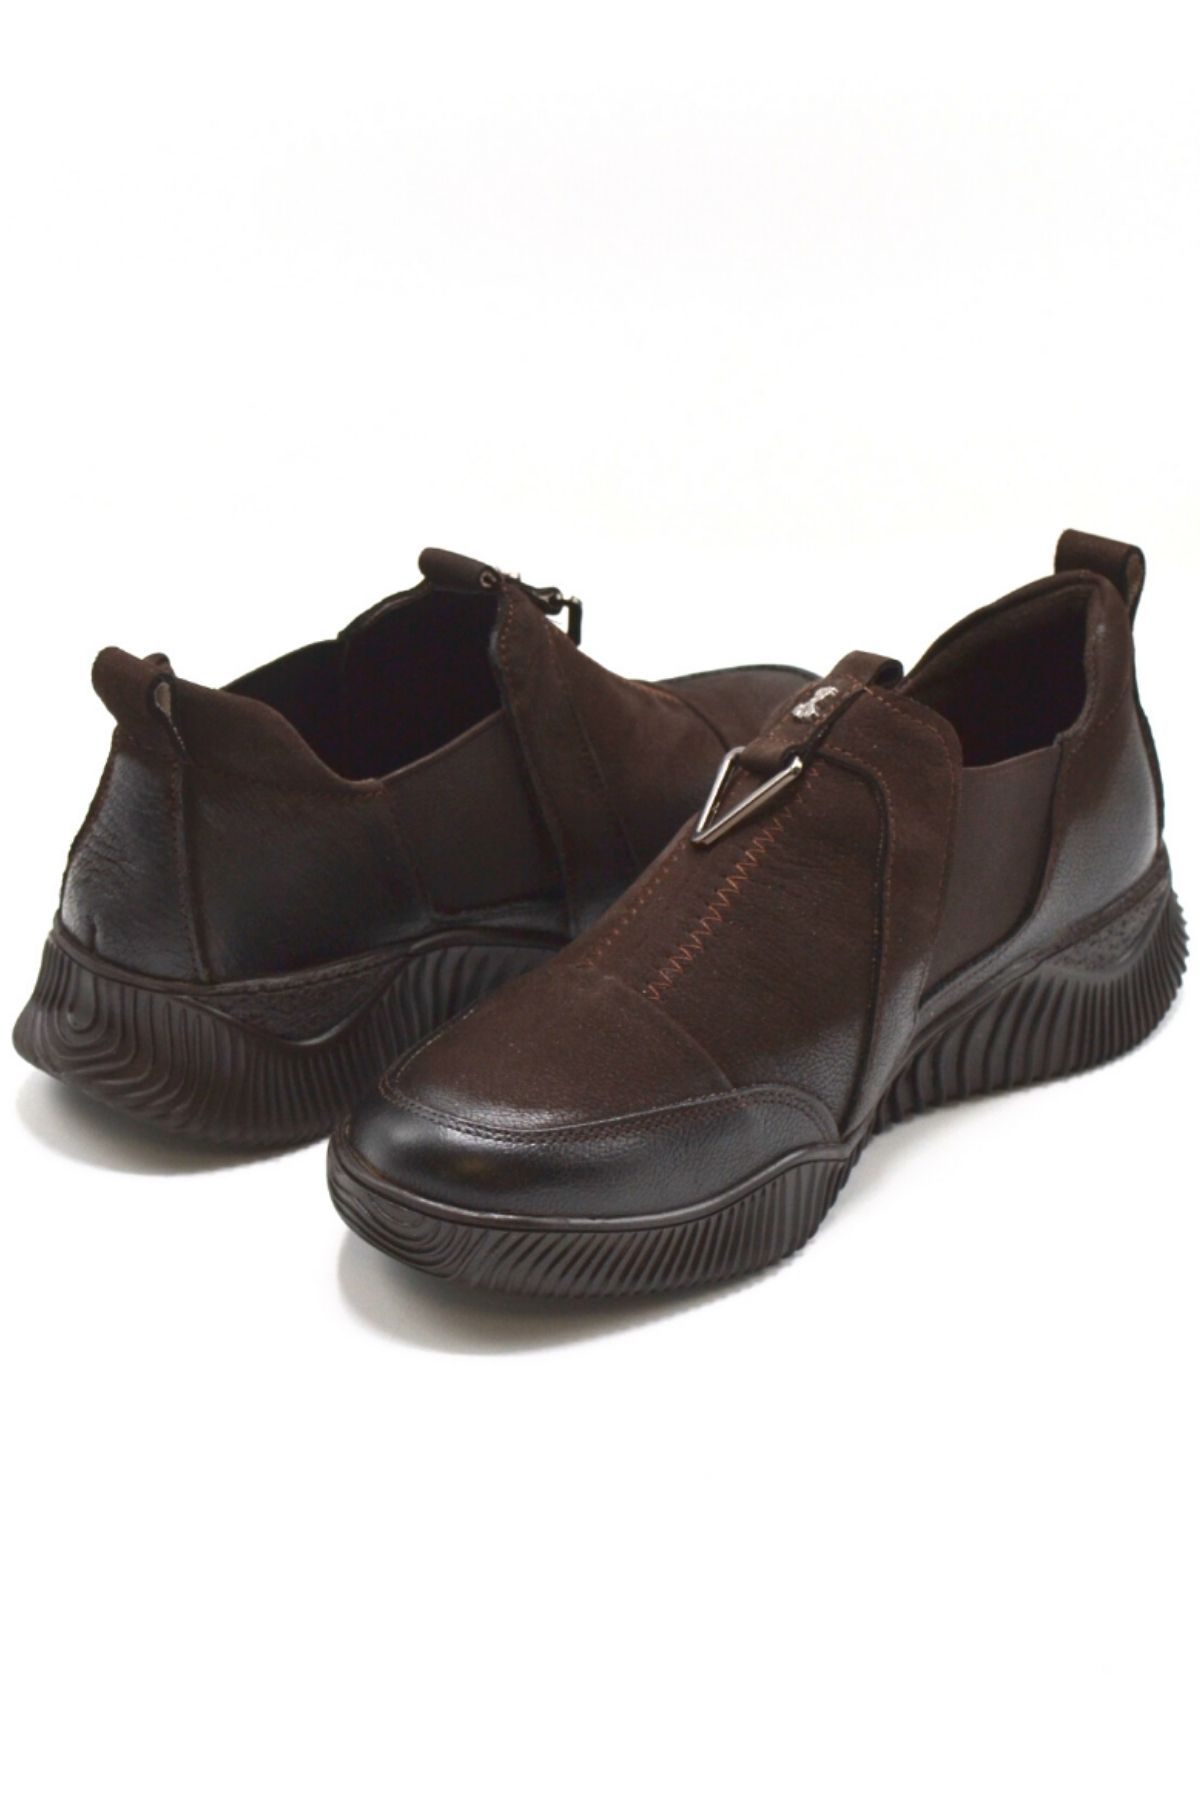 Kadın Comfort Deri Ayakkabı Kahve 1953840K - Thumbnail